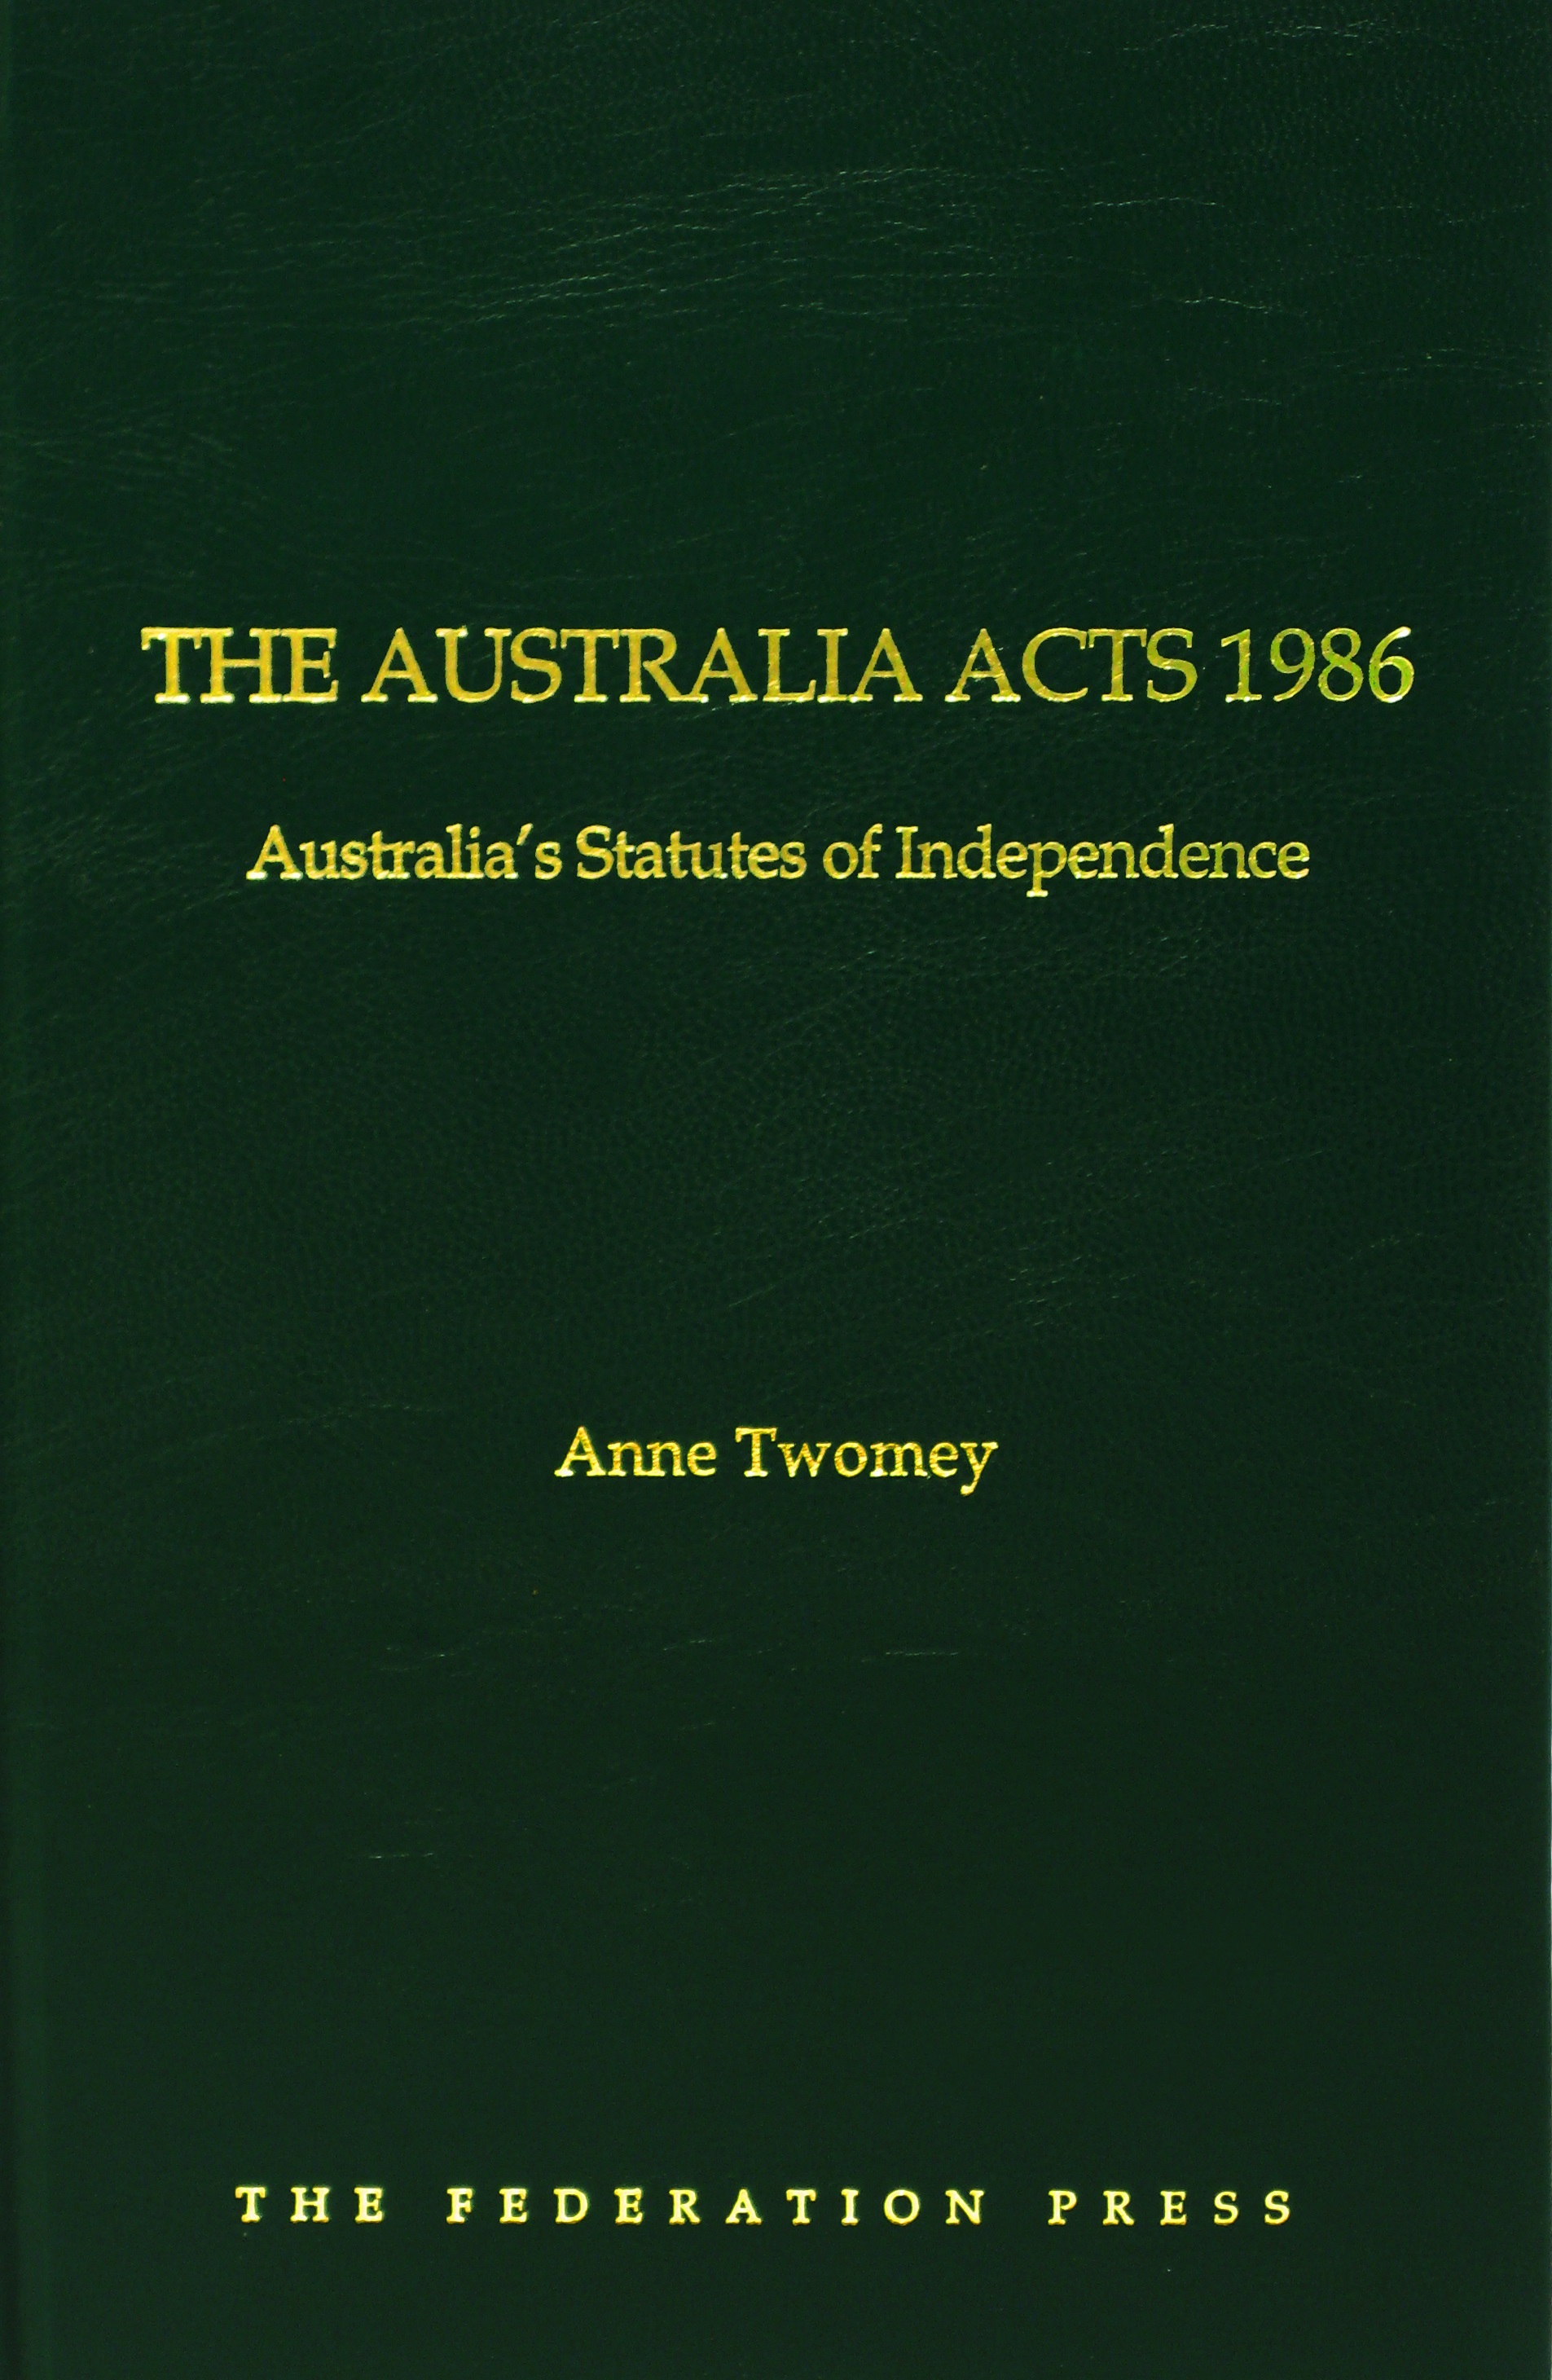 The Australia Acts 1986